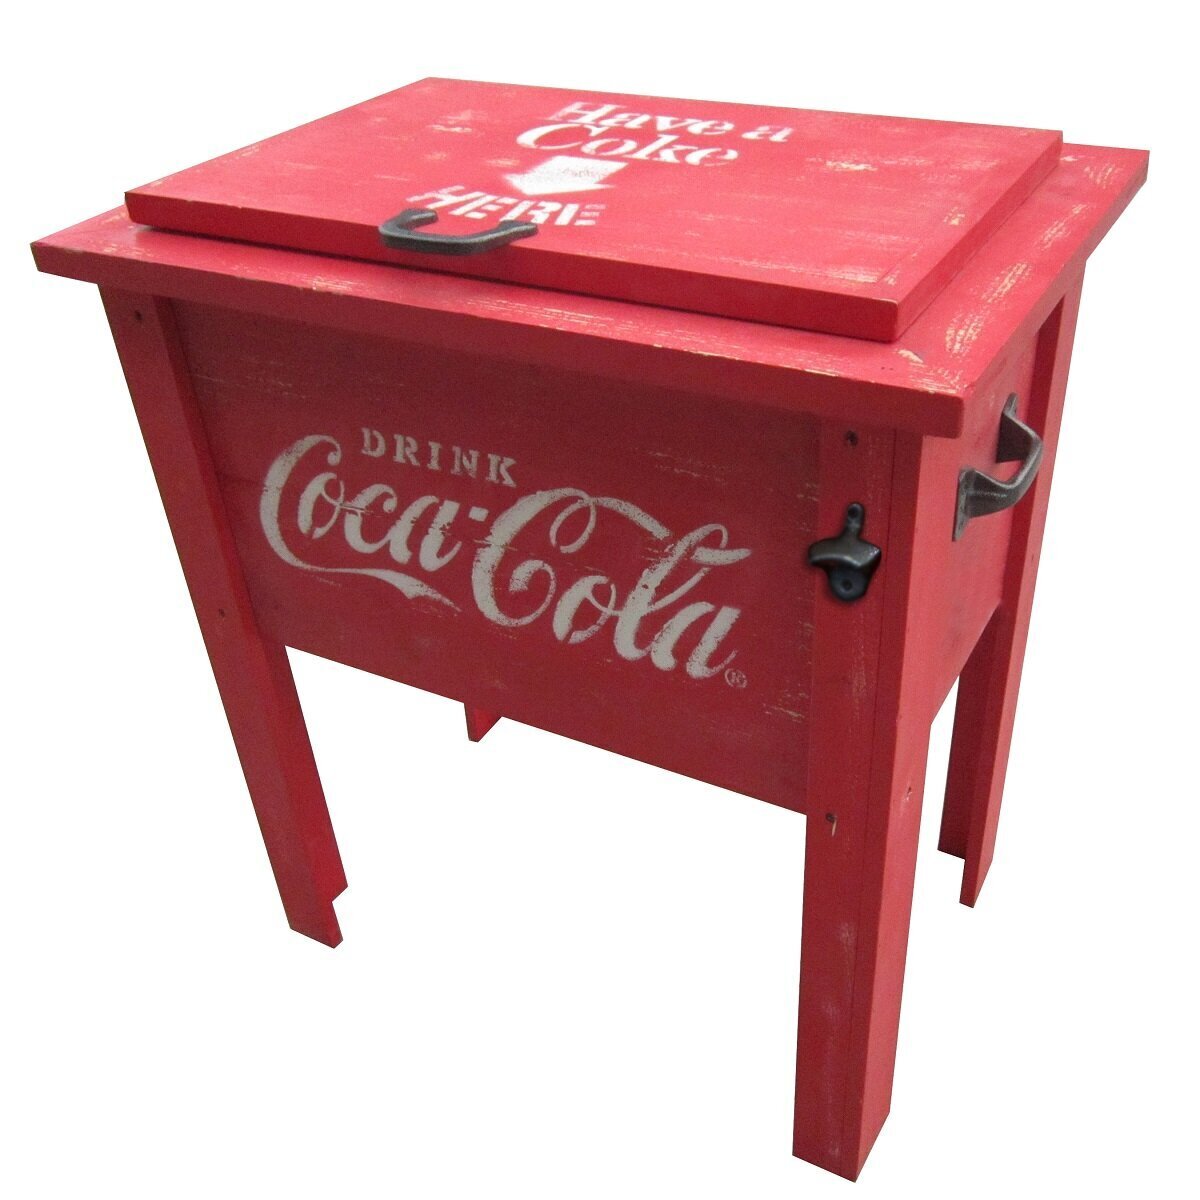 Coca Cola Furniture Patio Cooler